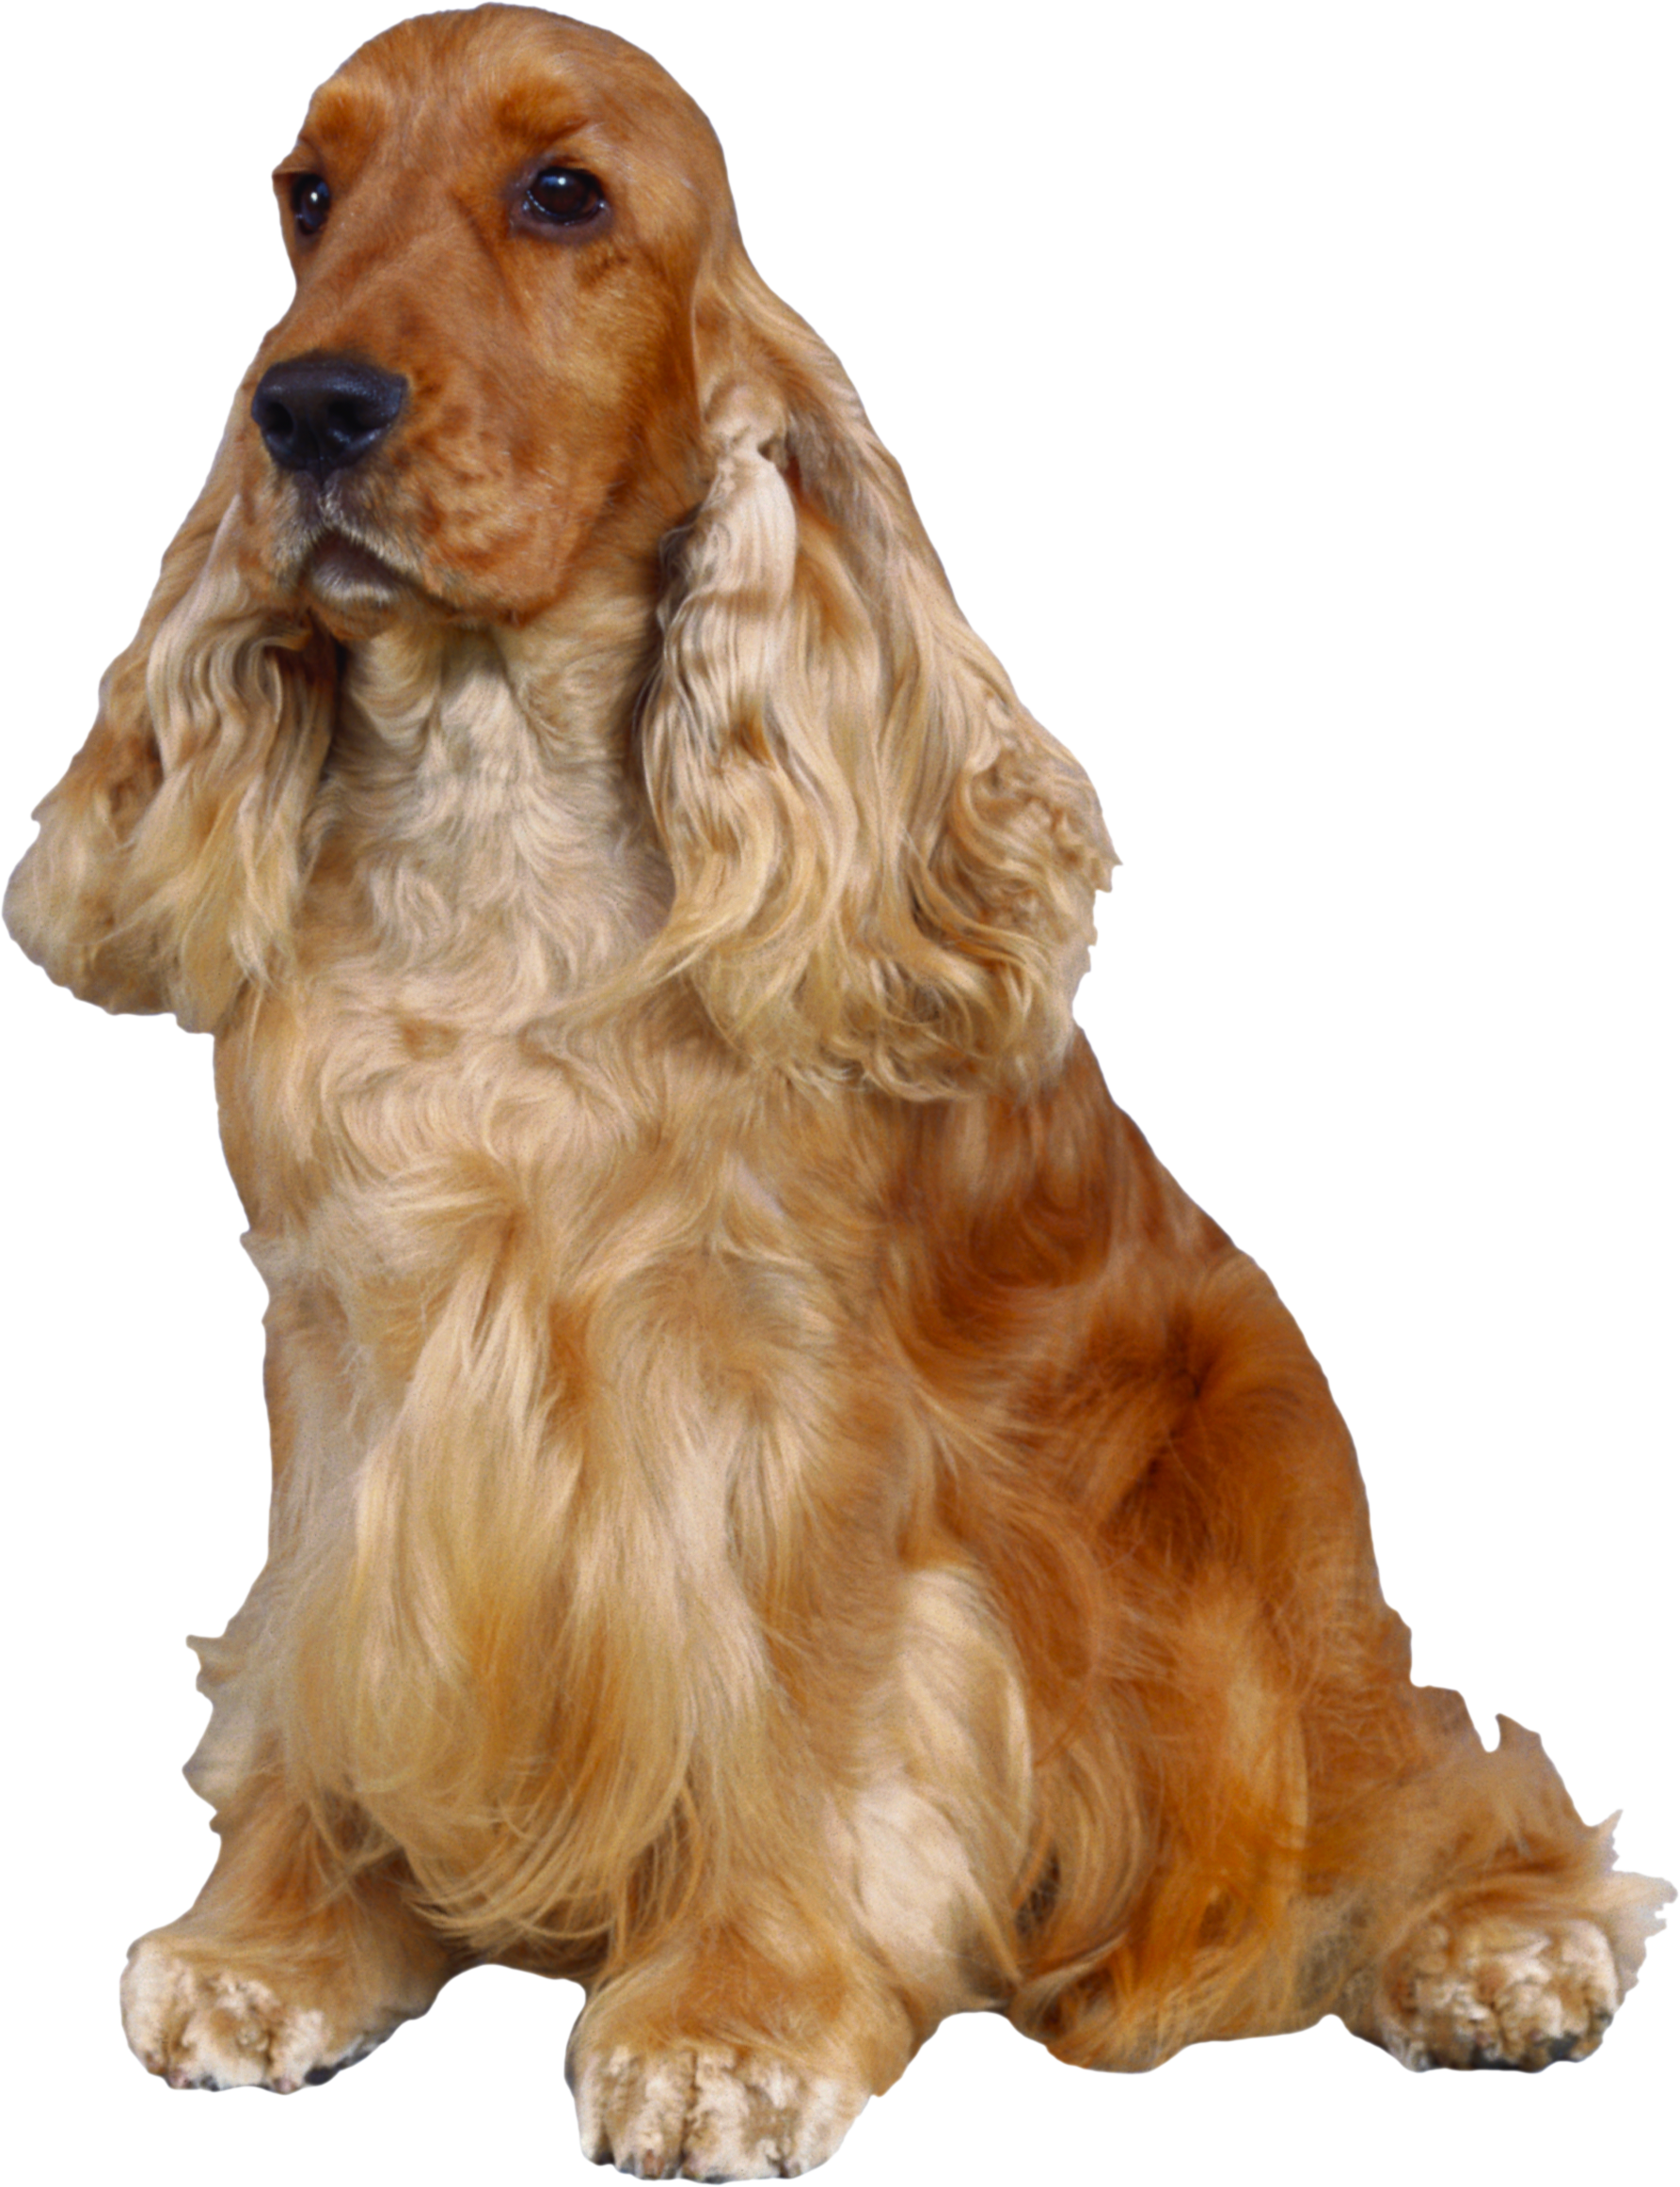 कॉकर स्पैनियल, बड़े कानों वाला लंबे बालों वाला कुत्ता